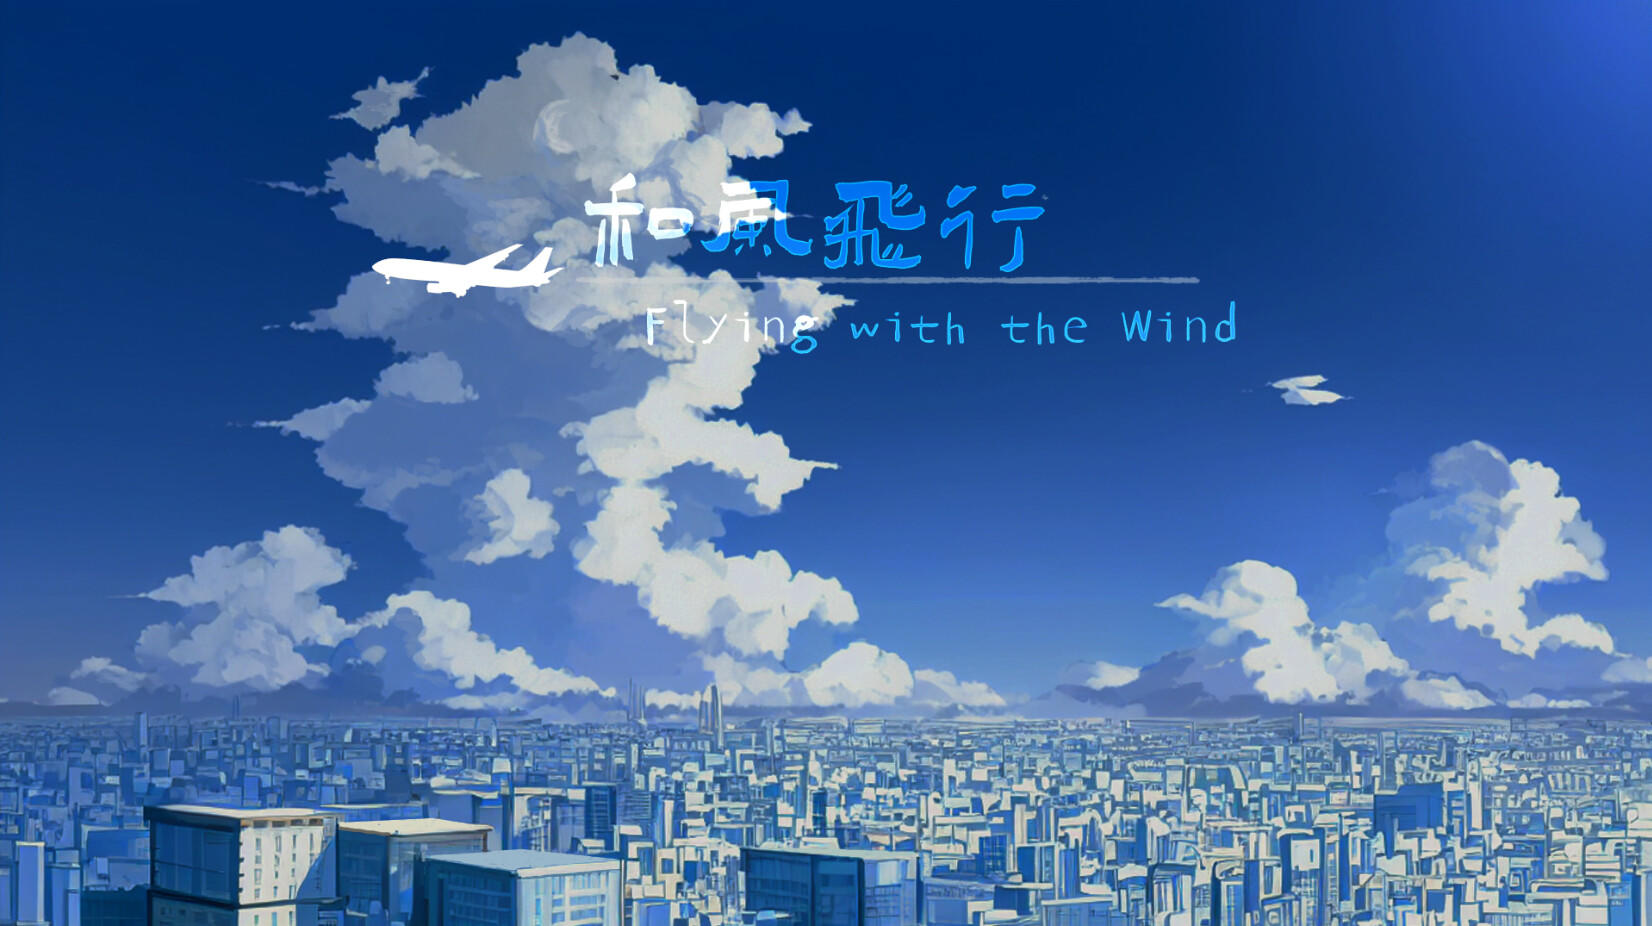 和风飞行 Flying with the wind screenshot game